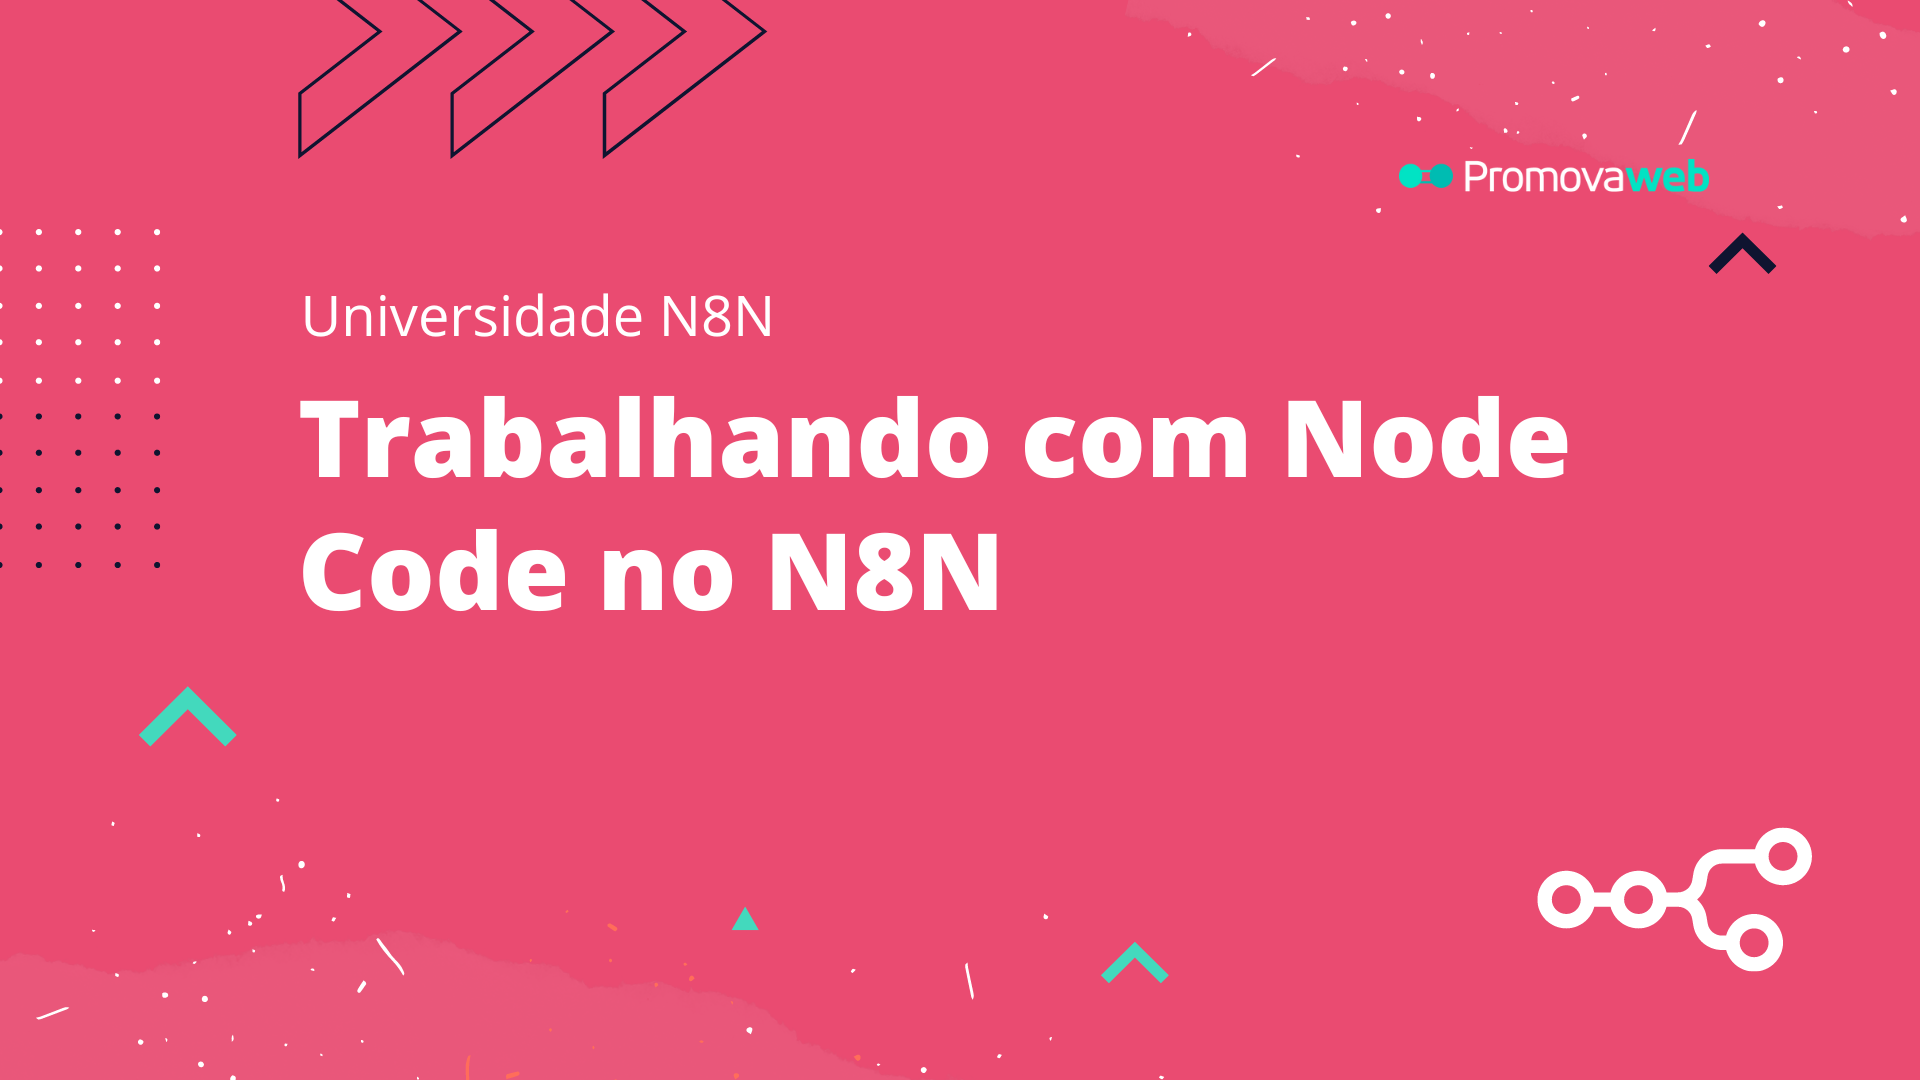 Trabalhando com Node Code no N8N